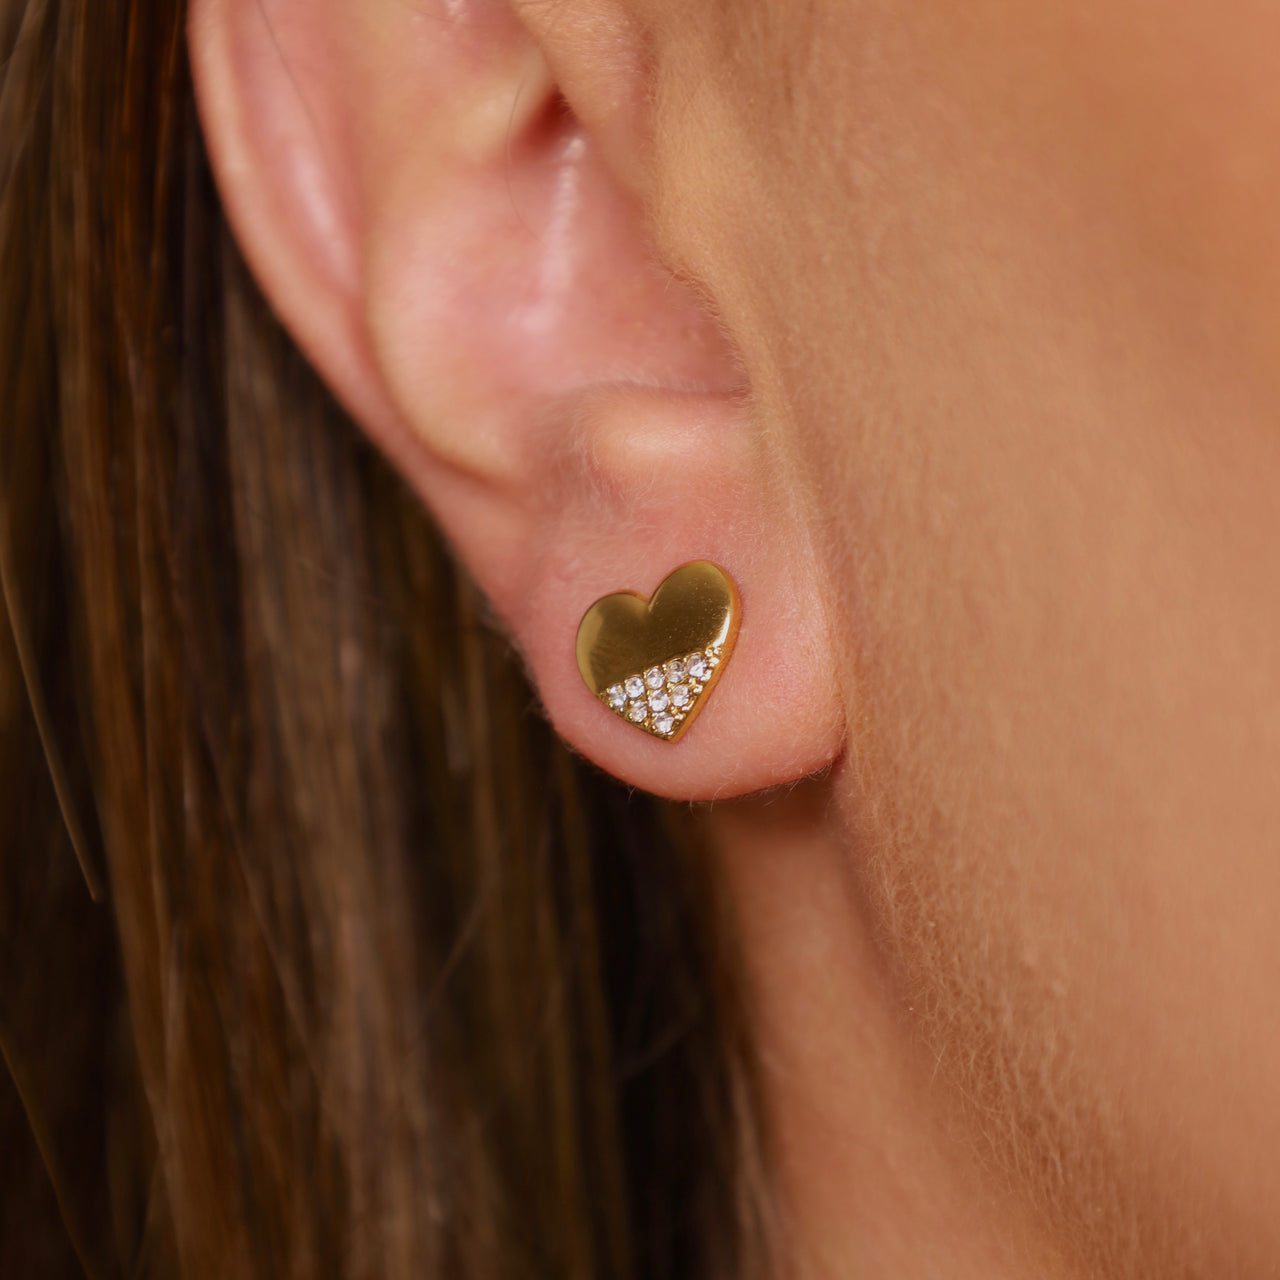 Mini heart earrings